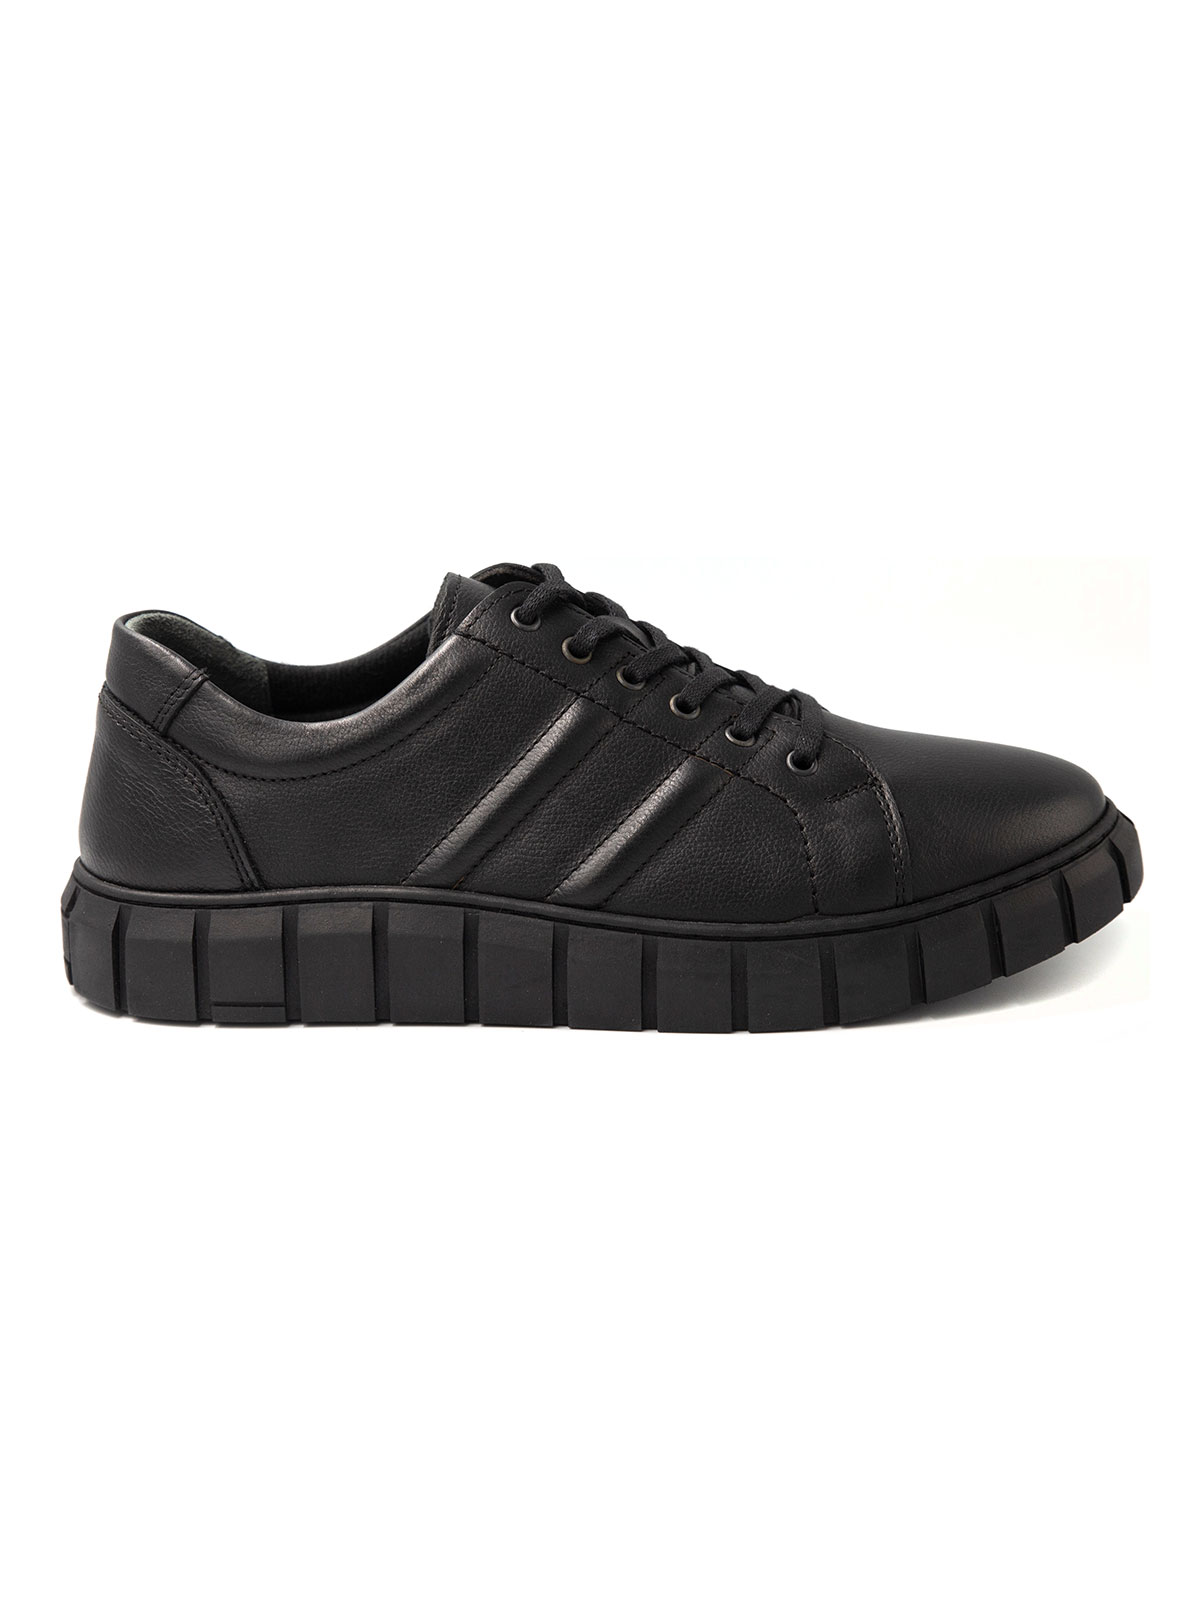 Μαύρα αθλητικά δερμάτινα παπούτσια - 81097 - € 51.74 img3